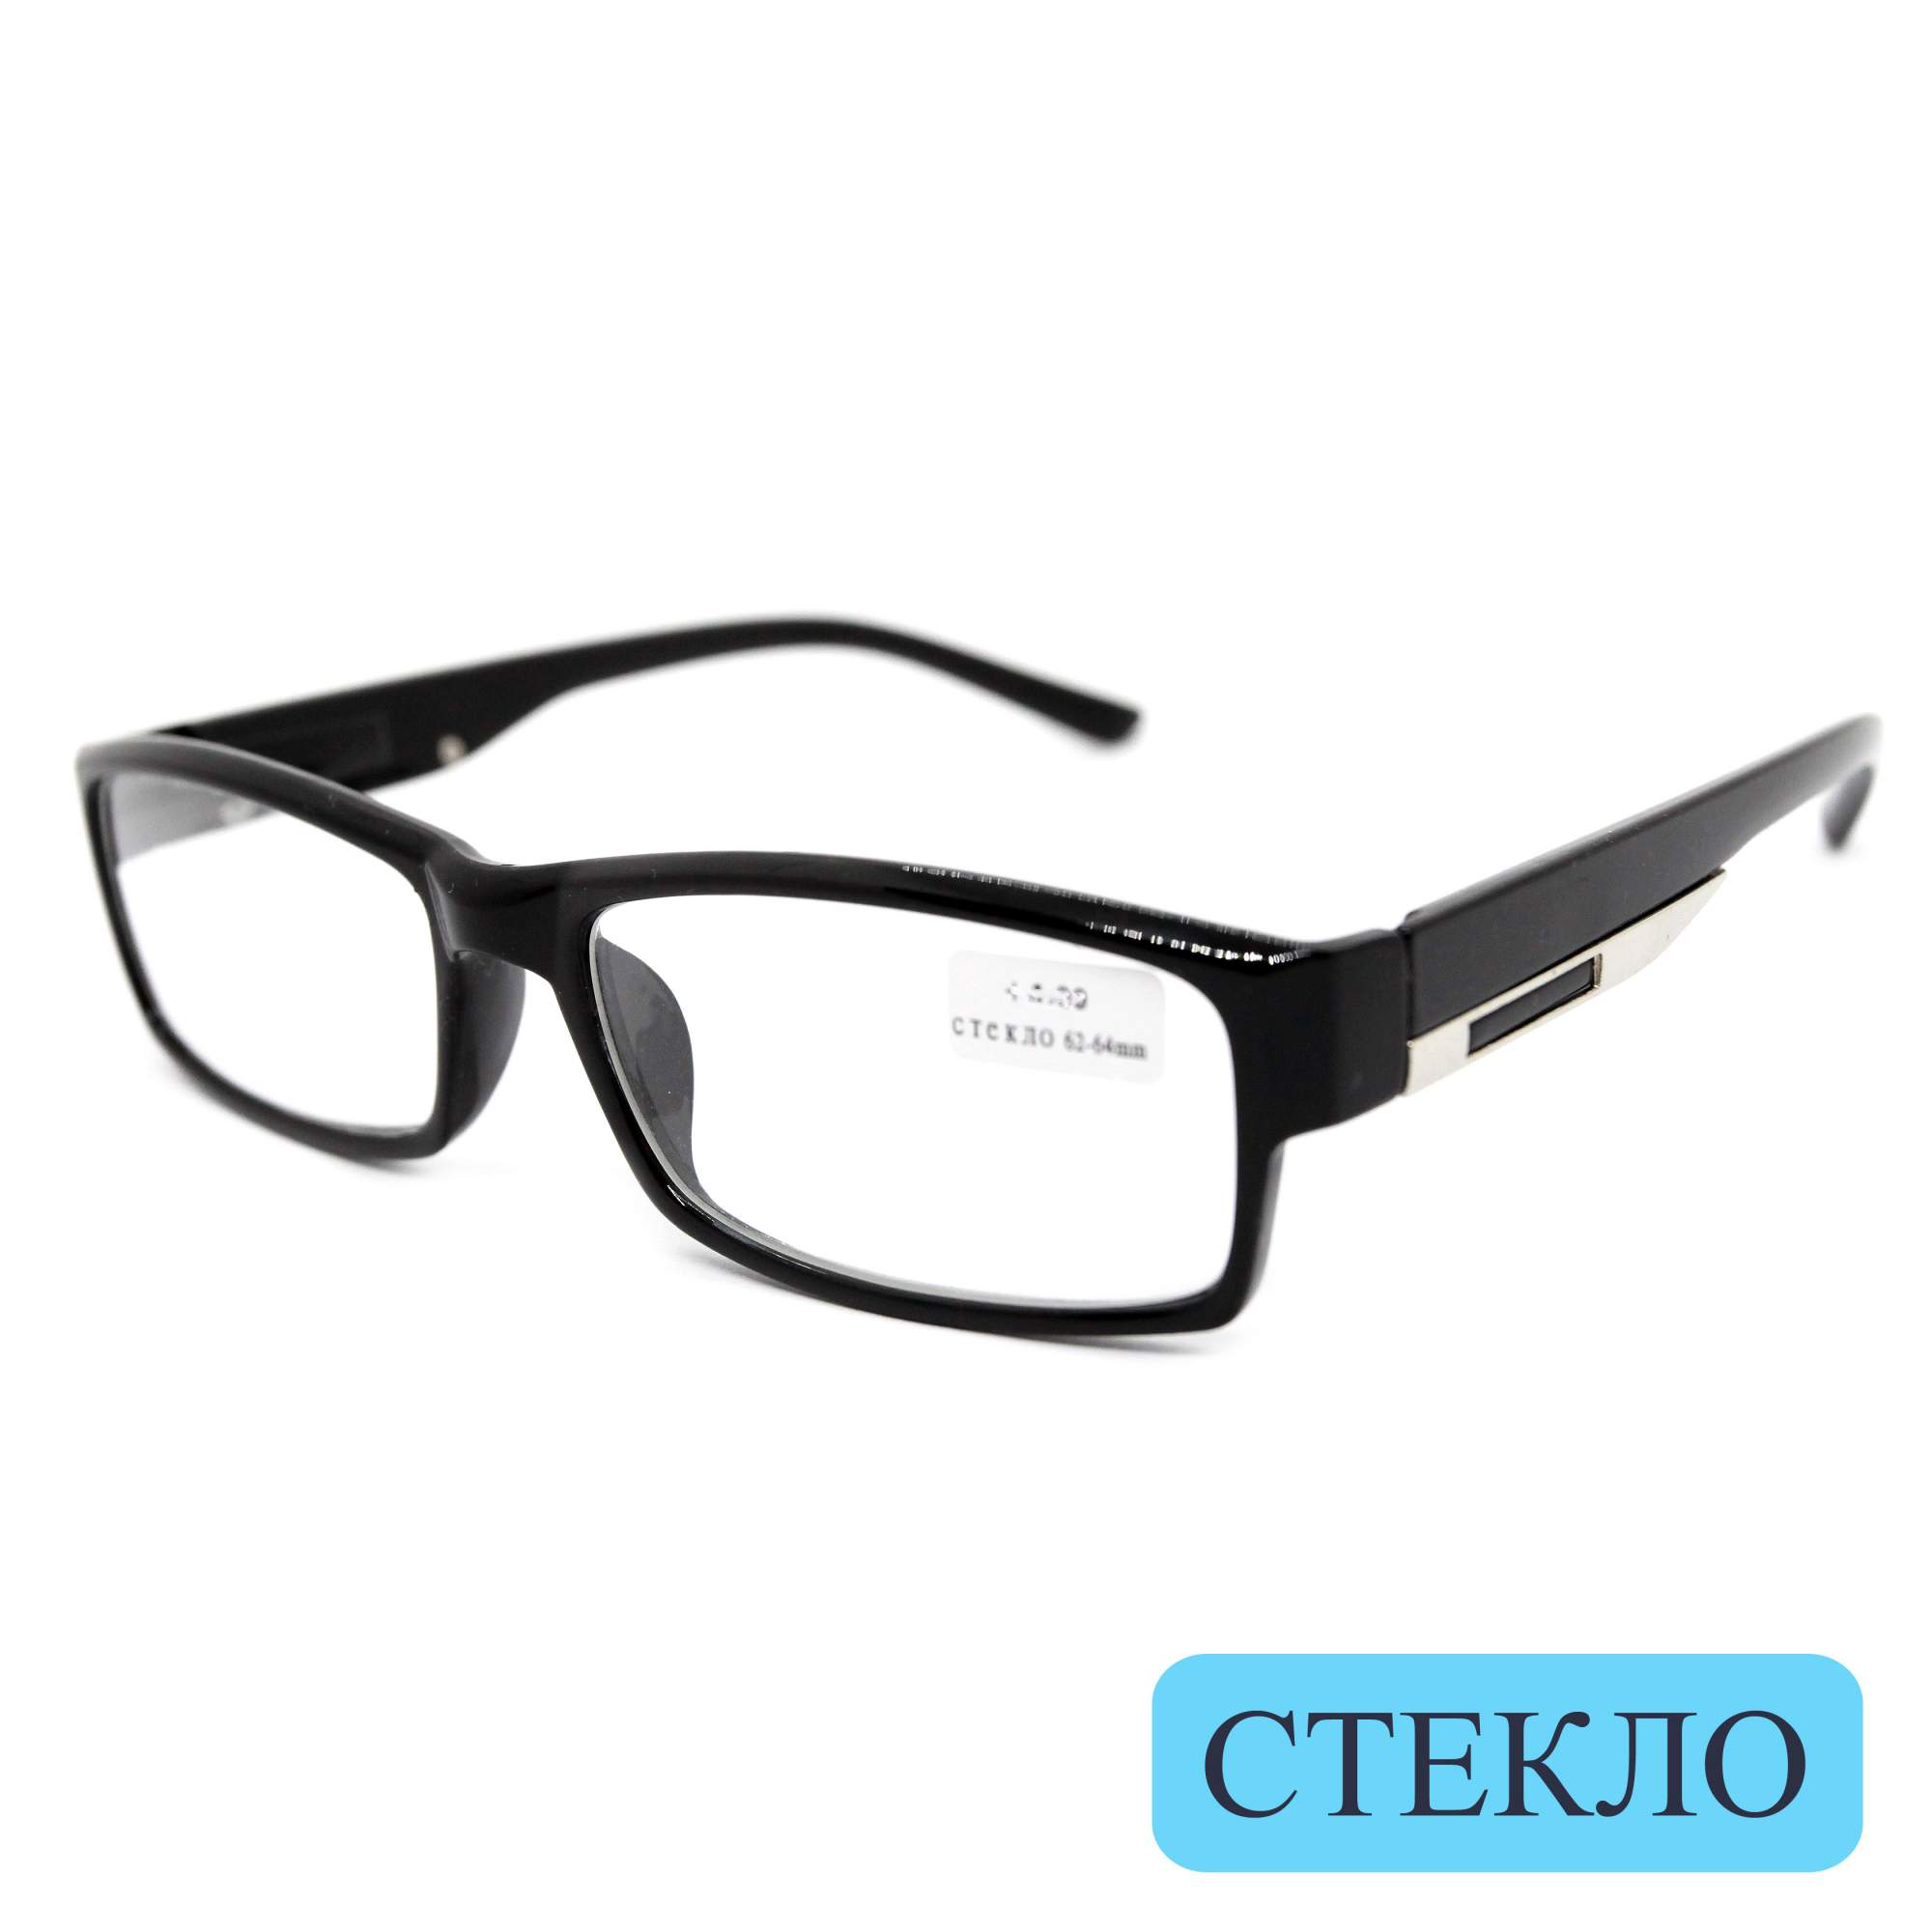 Готовые очки ВОСТОК 6613, со стеклянной линзой, +1,75, без футляра, черные, РЦ 62-64 - купить в интернет-магазинах, цены на Мегамаркет | корригирующие очки V-6613-175